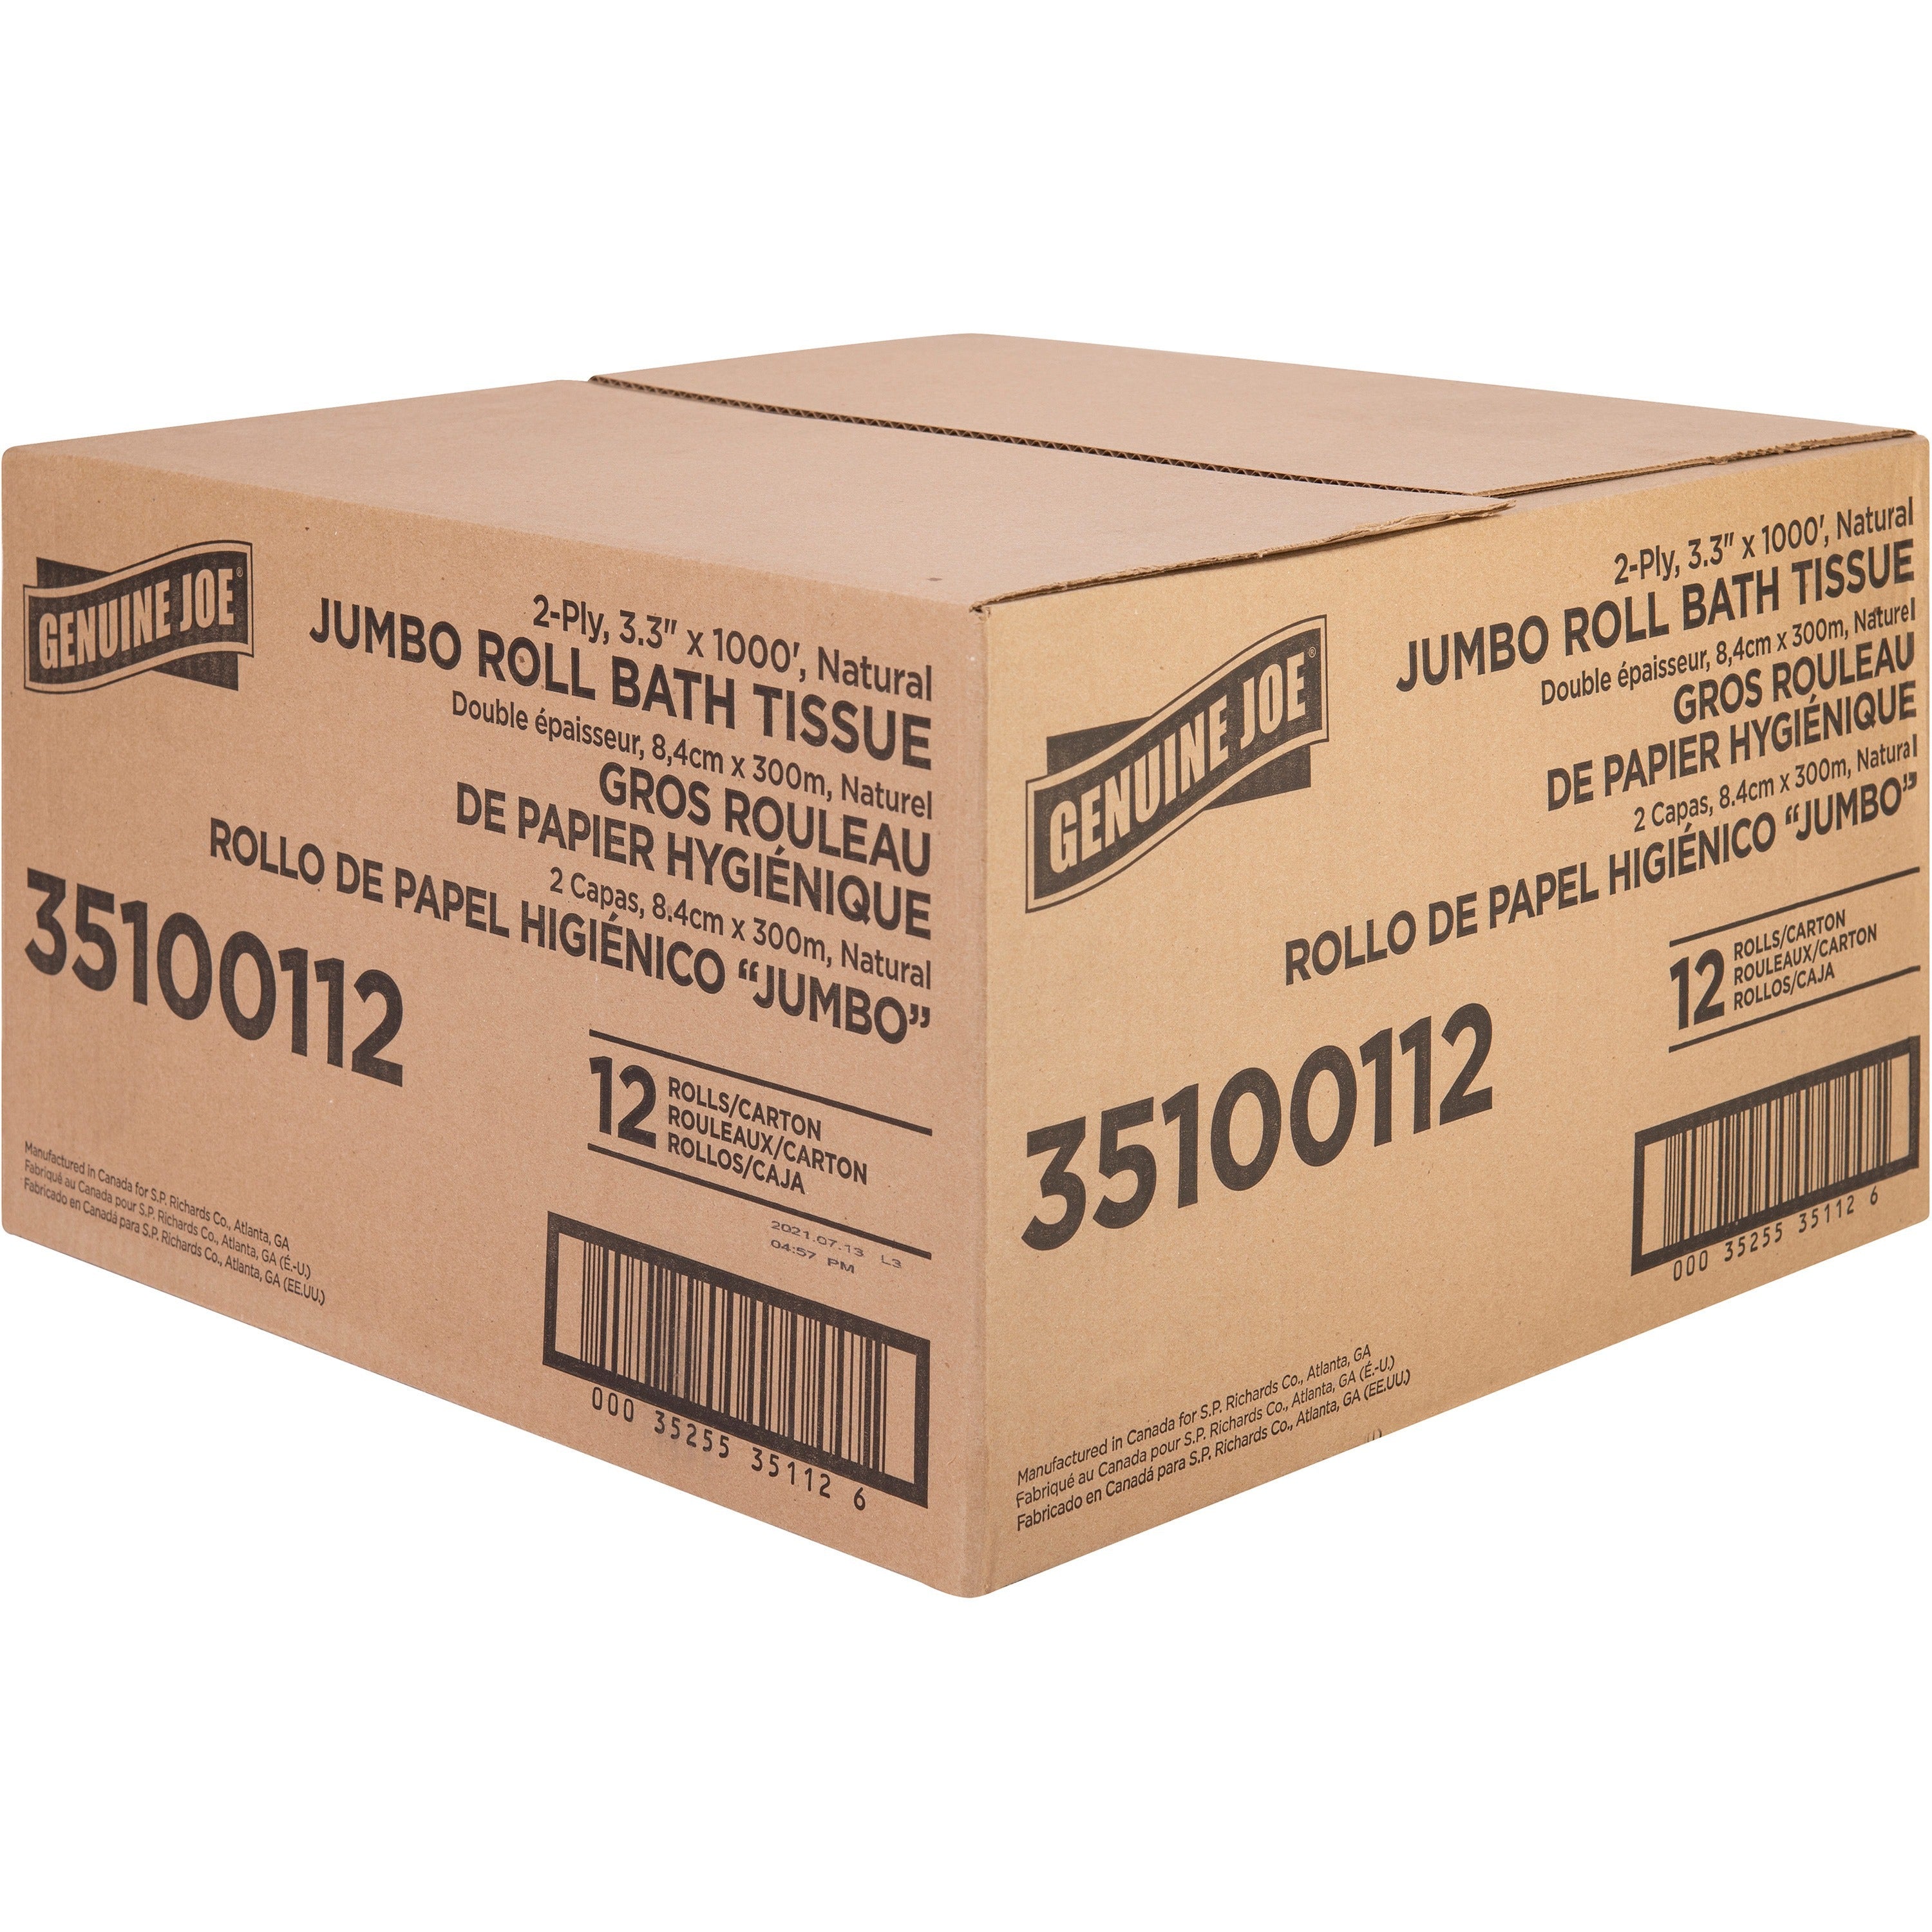 genuine-joe-jumbo-jr-dispenser-bath-tissue-roll-2-ply-330-x-1000-ft-888-roll-diameter-white-fiber-sewer-safe-septic-safe-for-bathroom-12-carton_gjo35100112 - 4